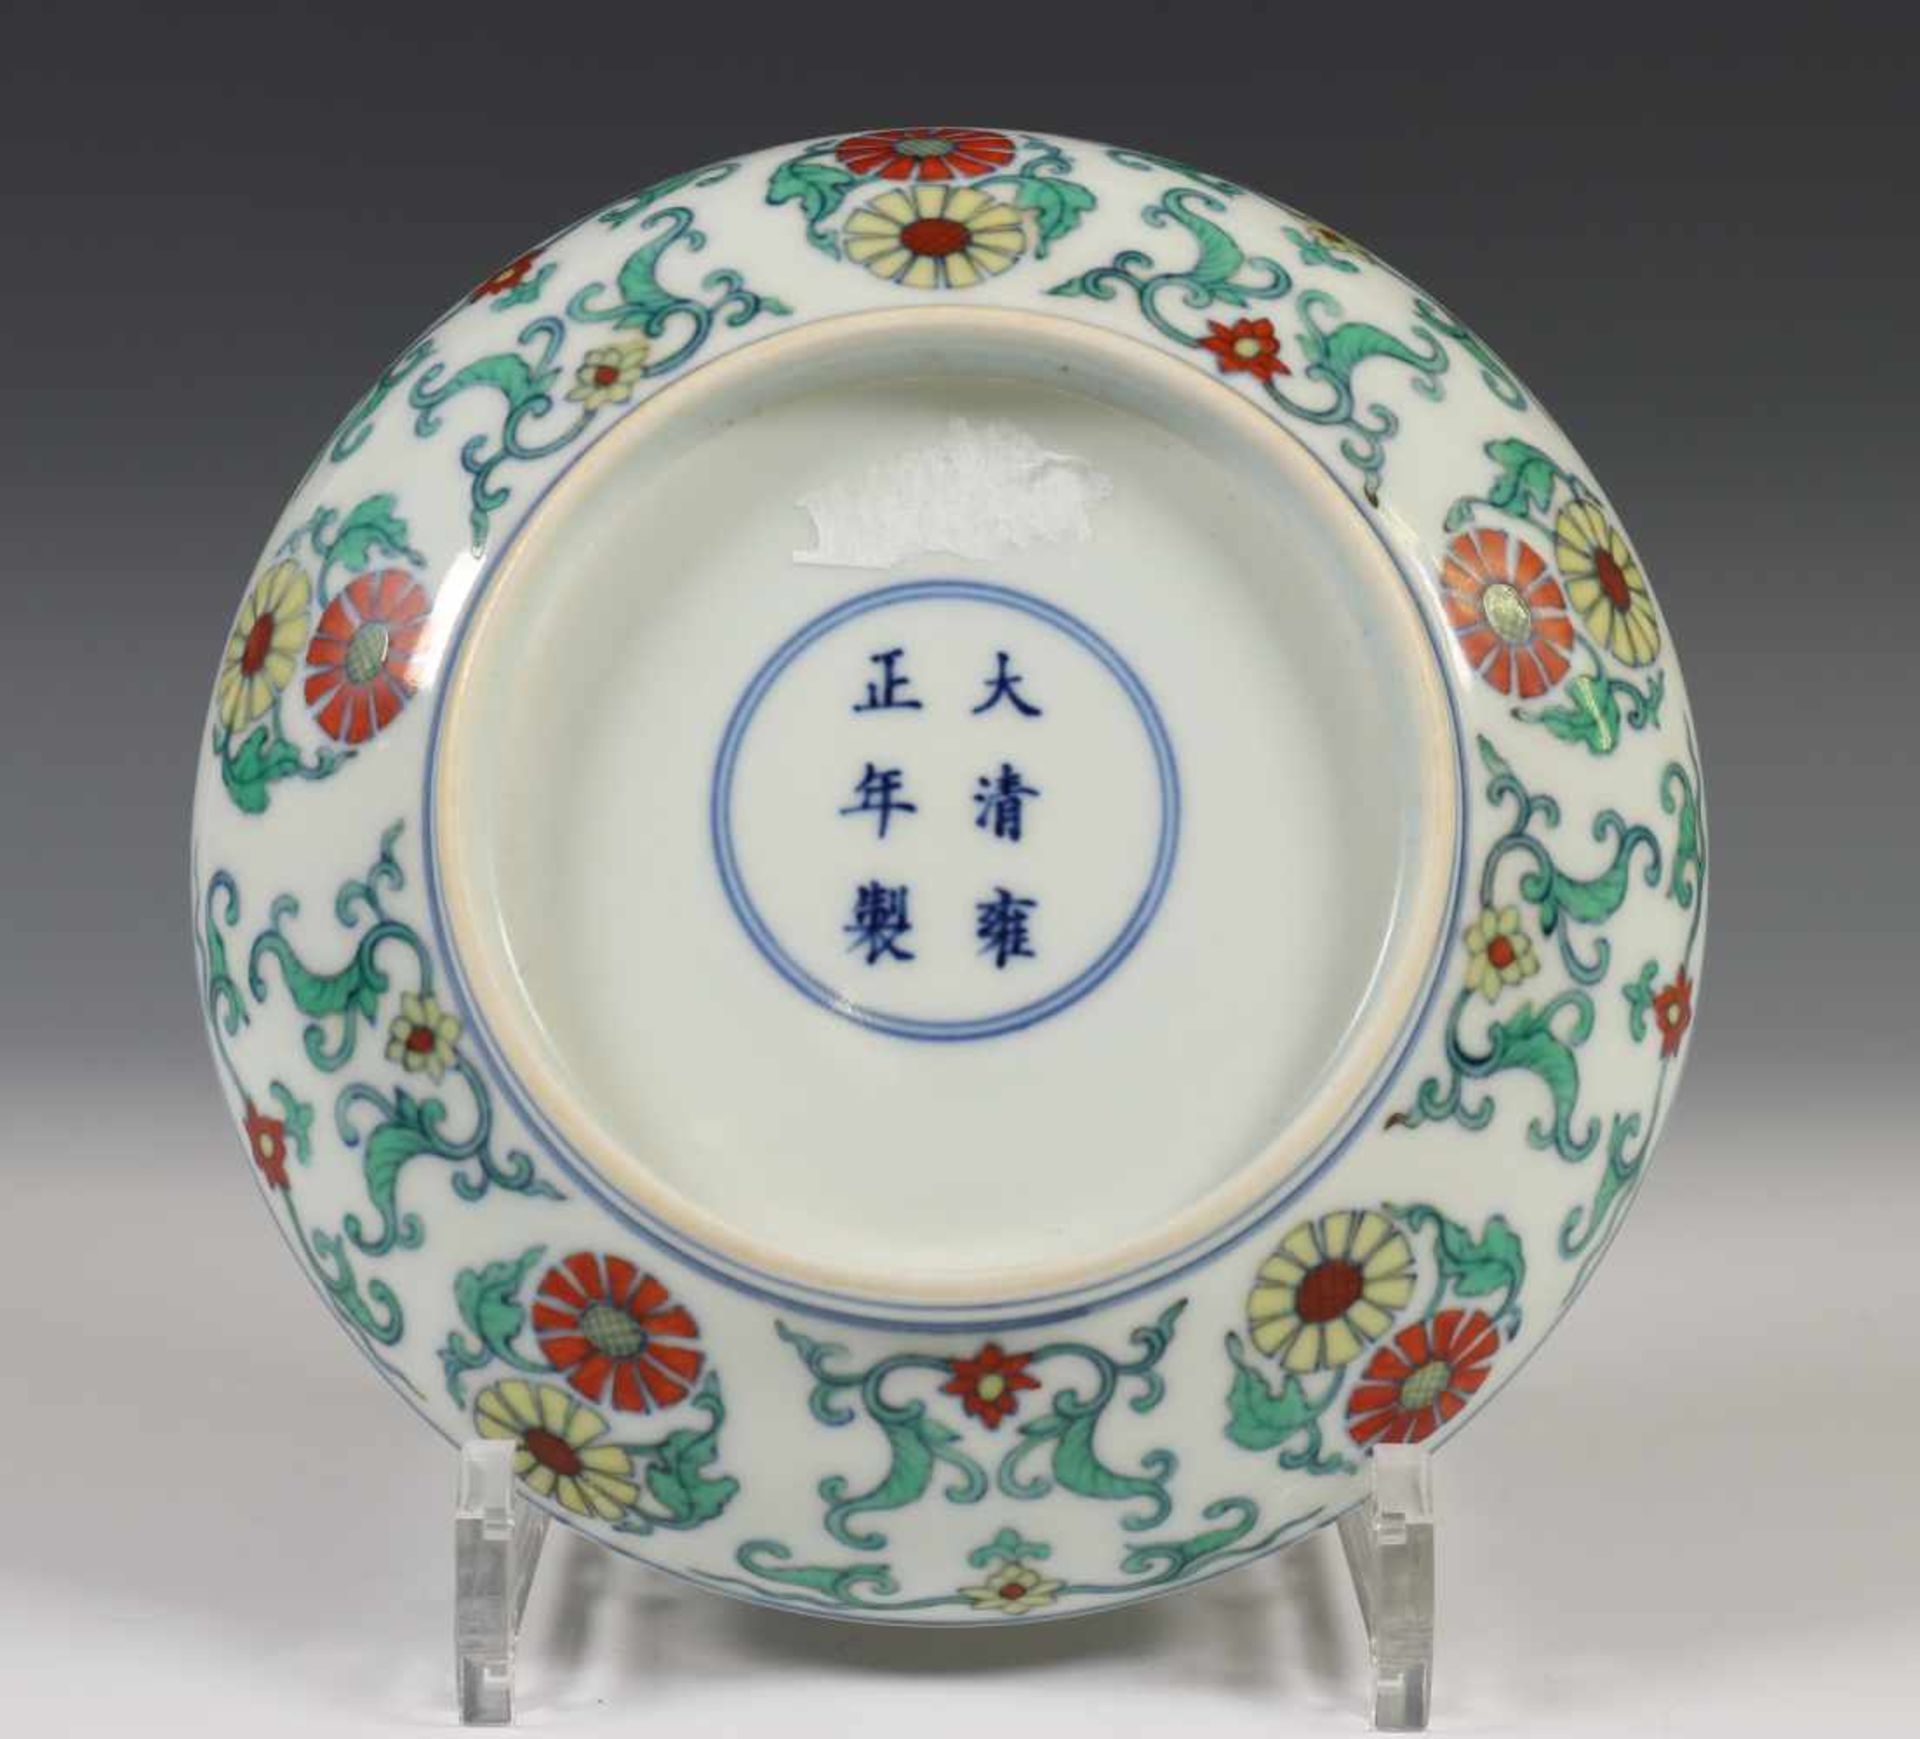 China, wucai porseleinen bord, 20e eeuw,gedecoreerd met gestileerde bloemen, met apocrief - Bild 2 aus 2